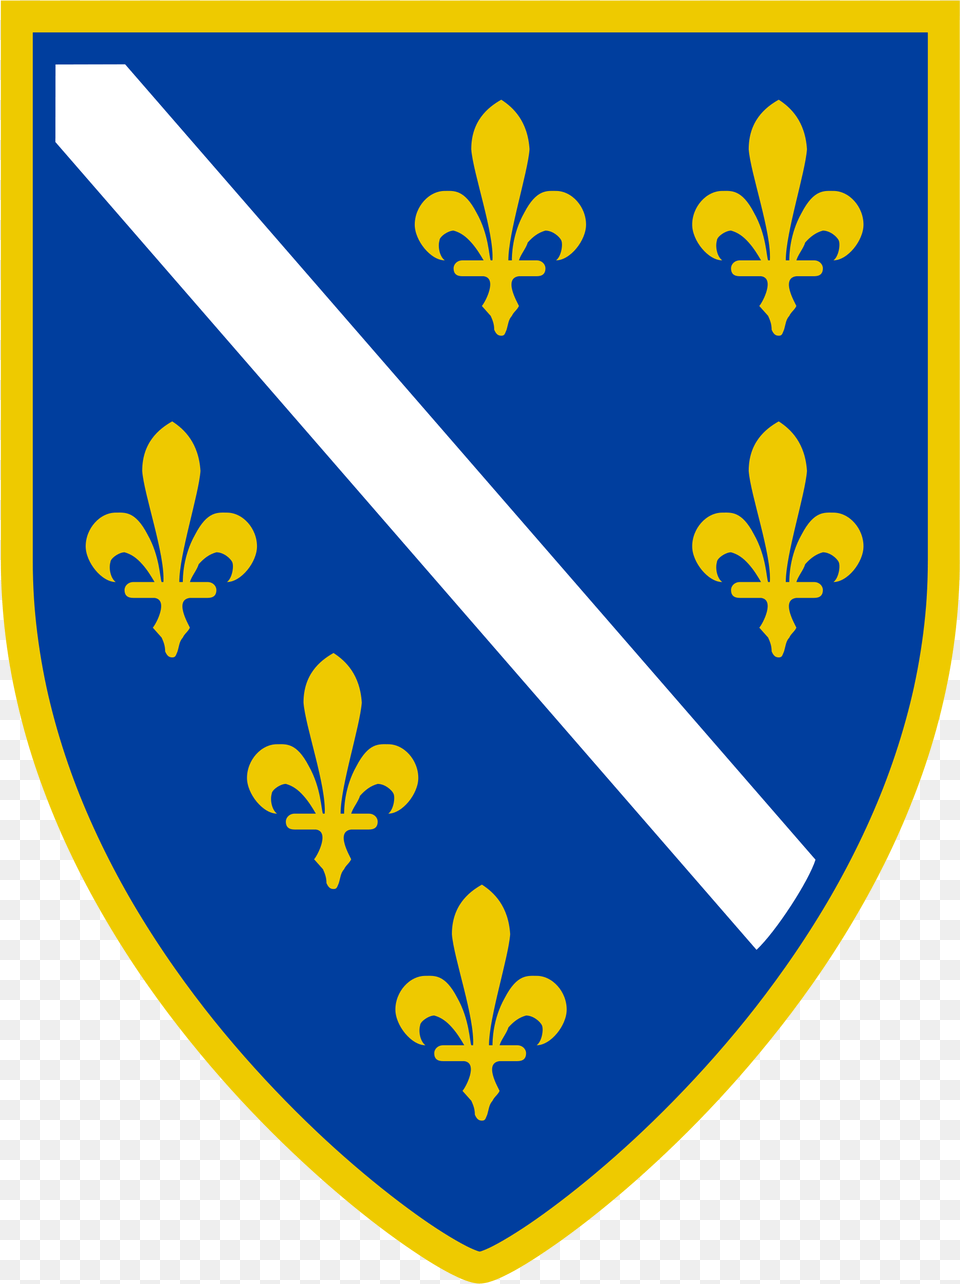 Fleur De Lis Shield Logo Bosnian Coat Of Arms, Armor Png Image